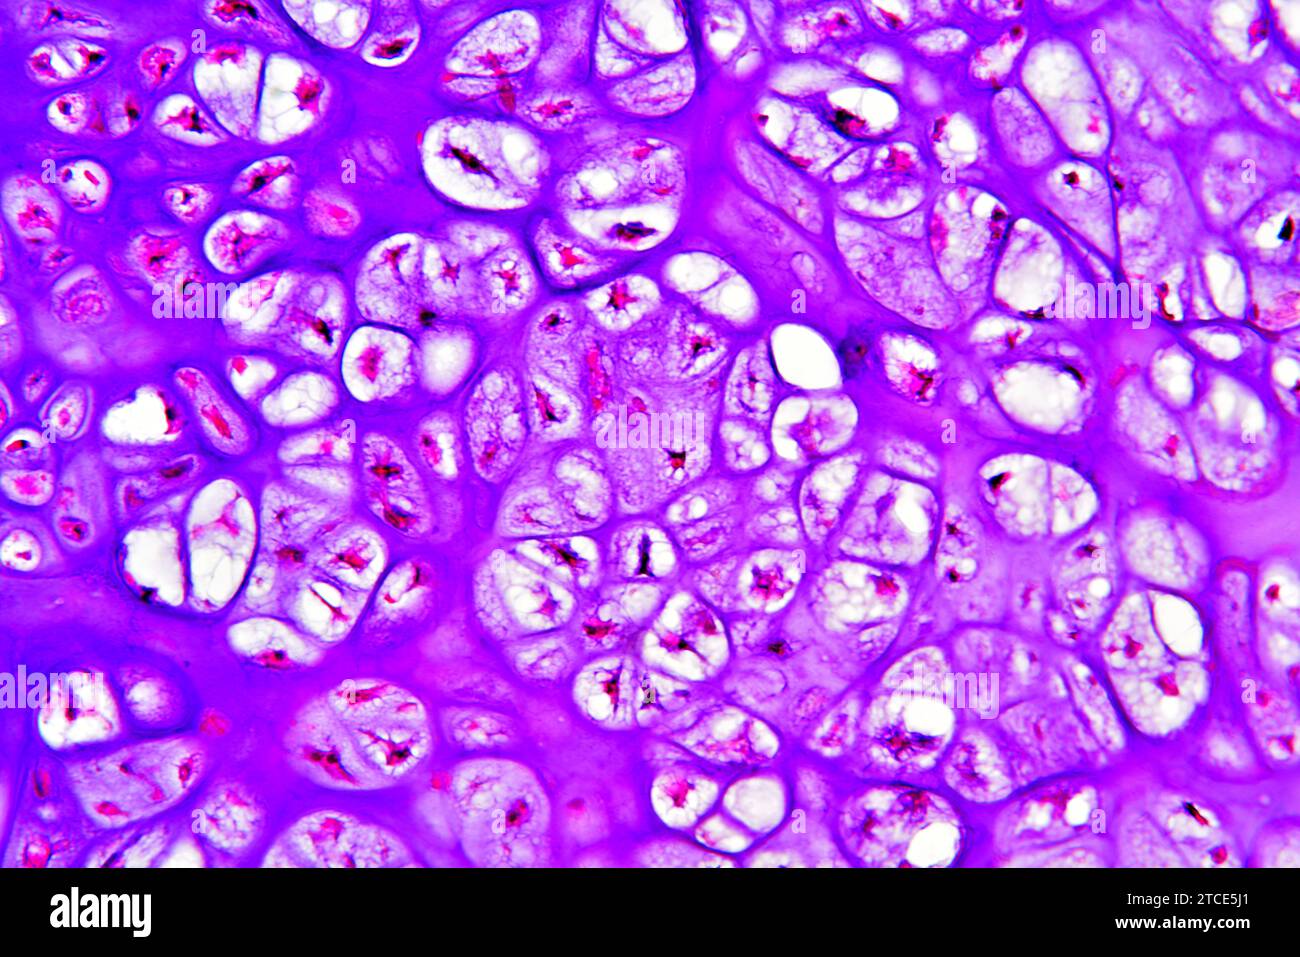 Condrosoma osseo pubico umano (tumore benigno) che mostra condrociti e matrice. Microscopio ottico X200. Foto Stock